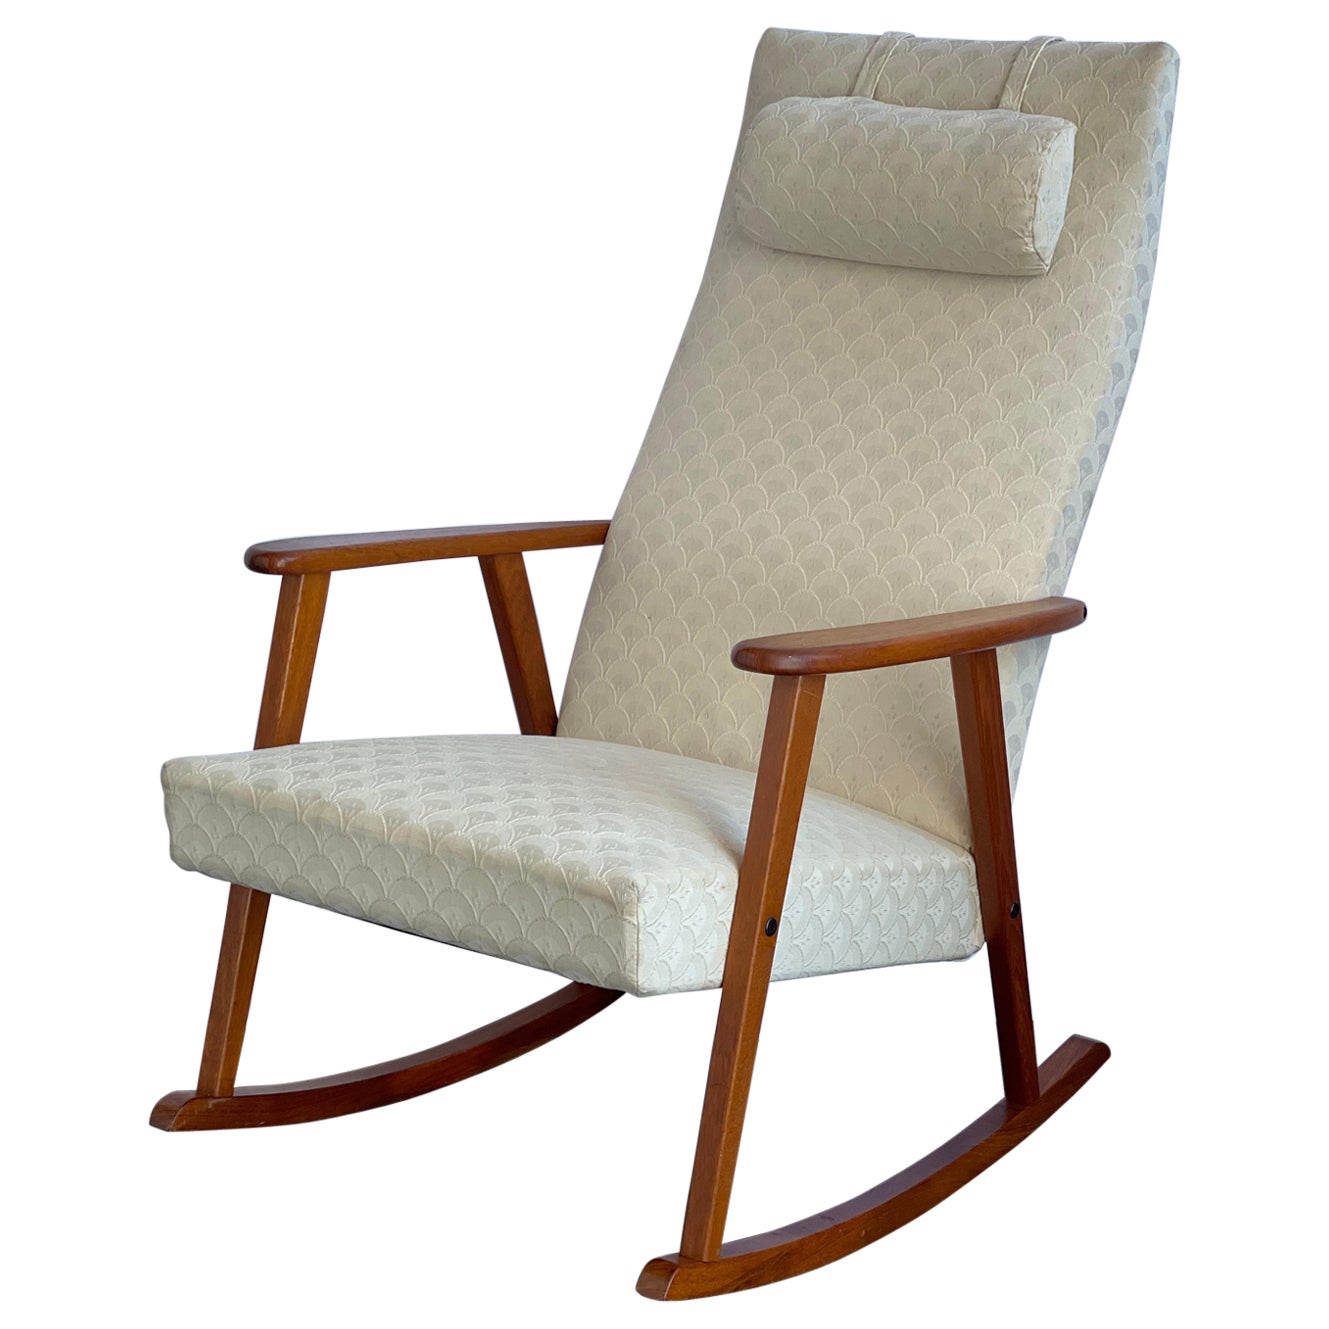 Vintage 1960s Mid-Century Modern Danish Teak Rocking Chair